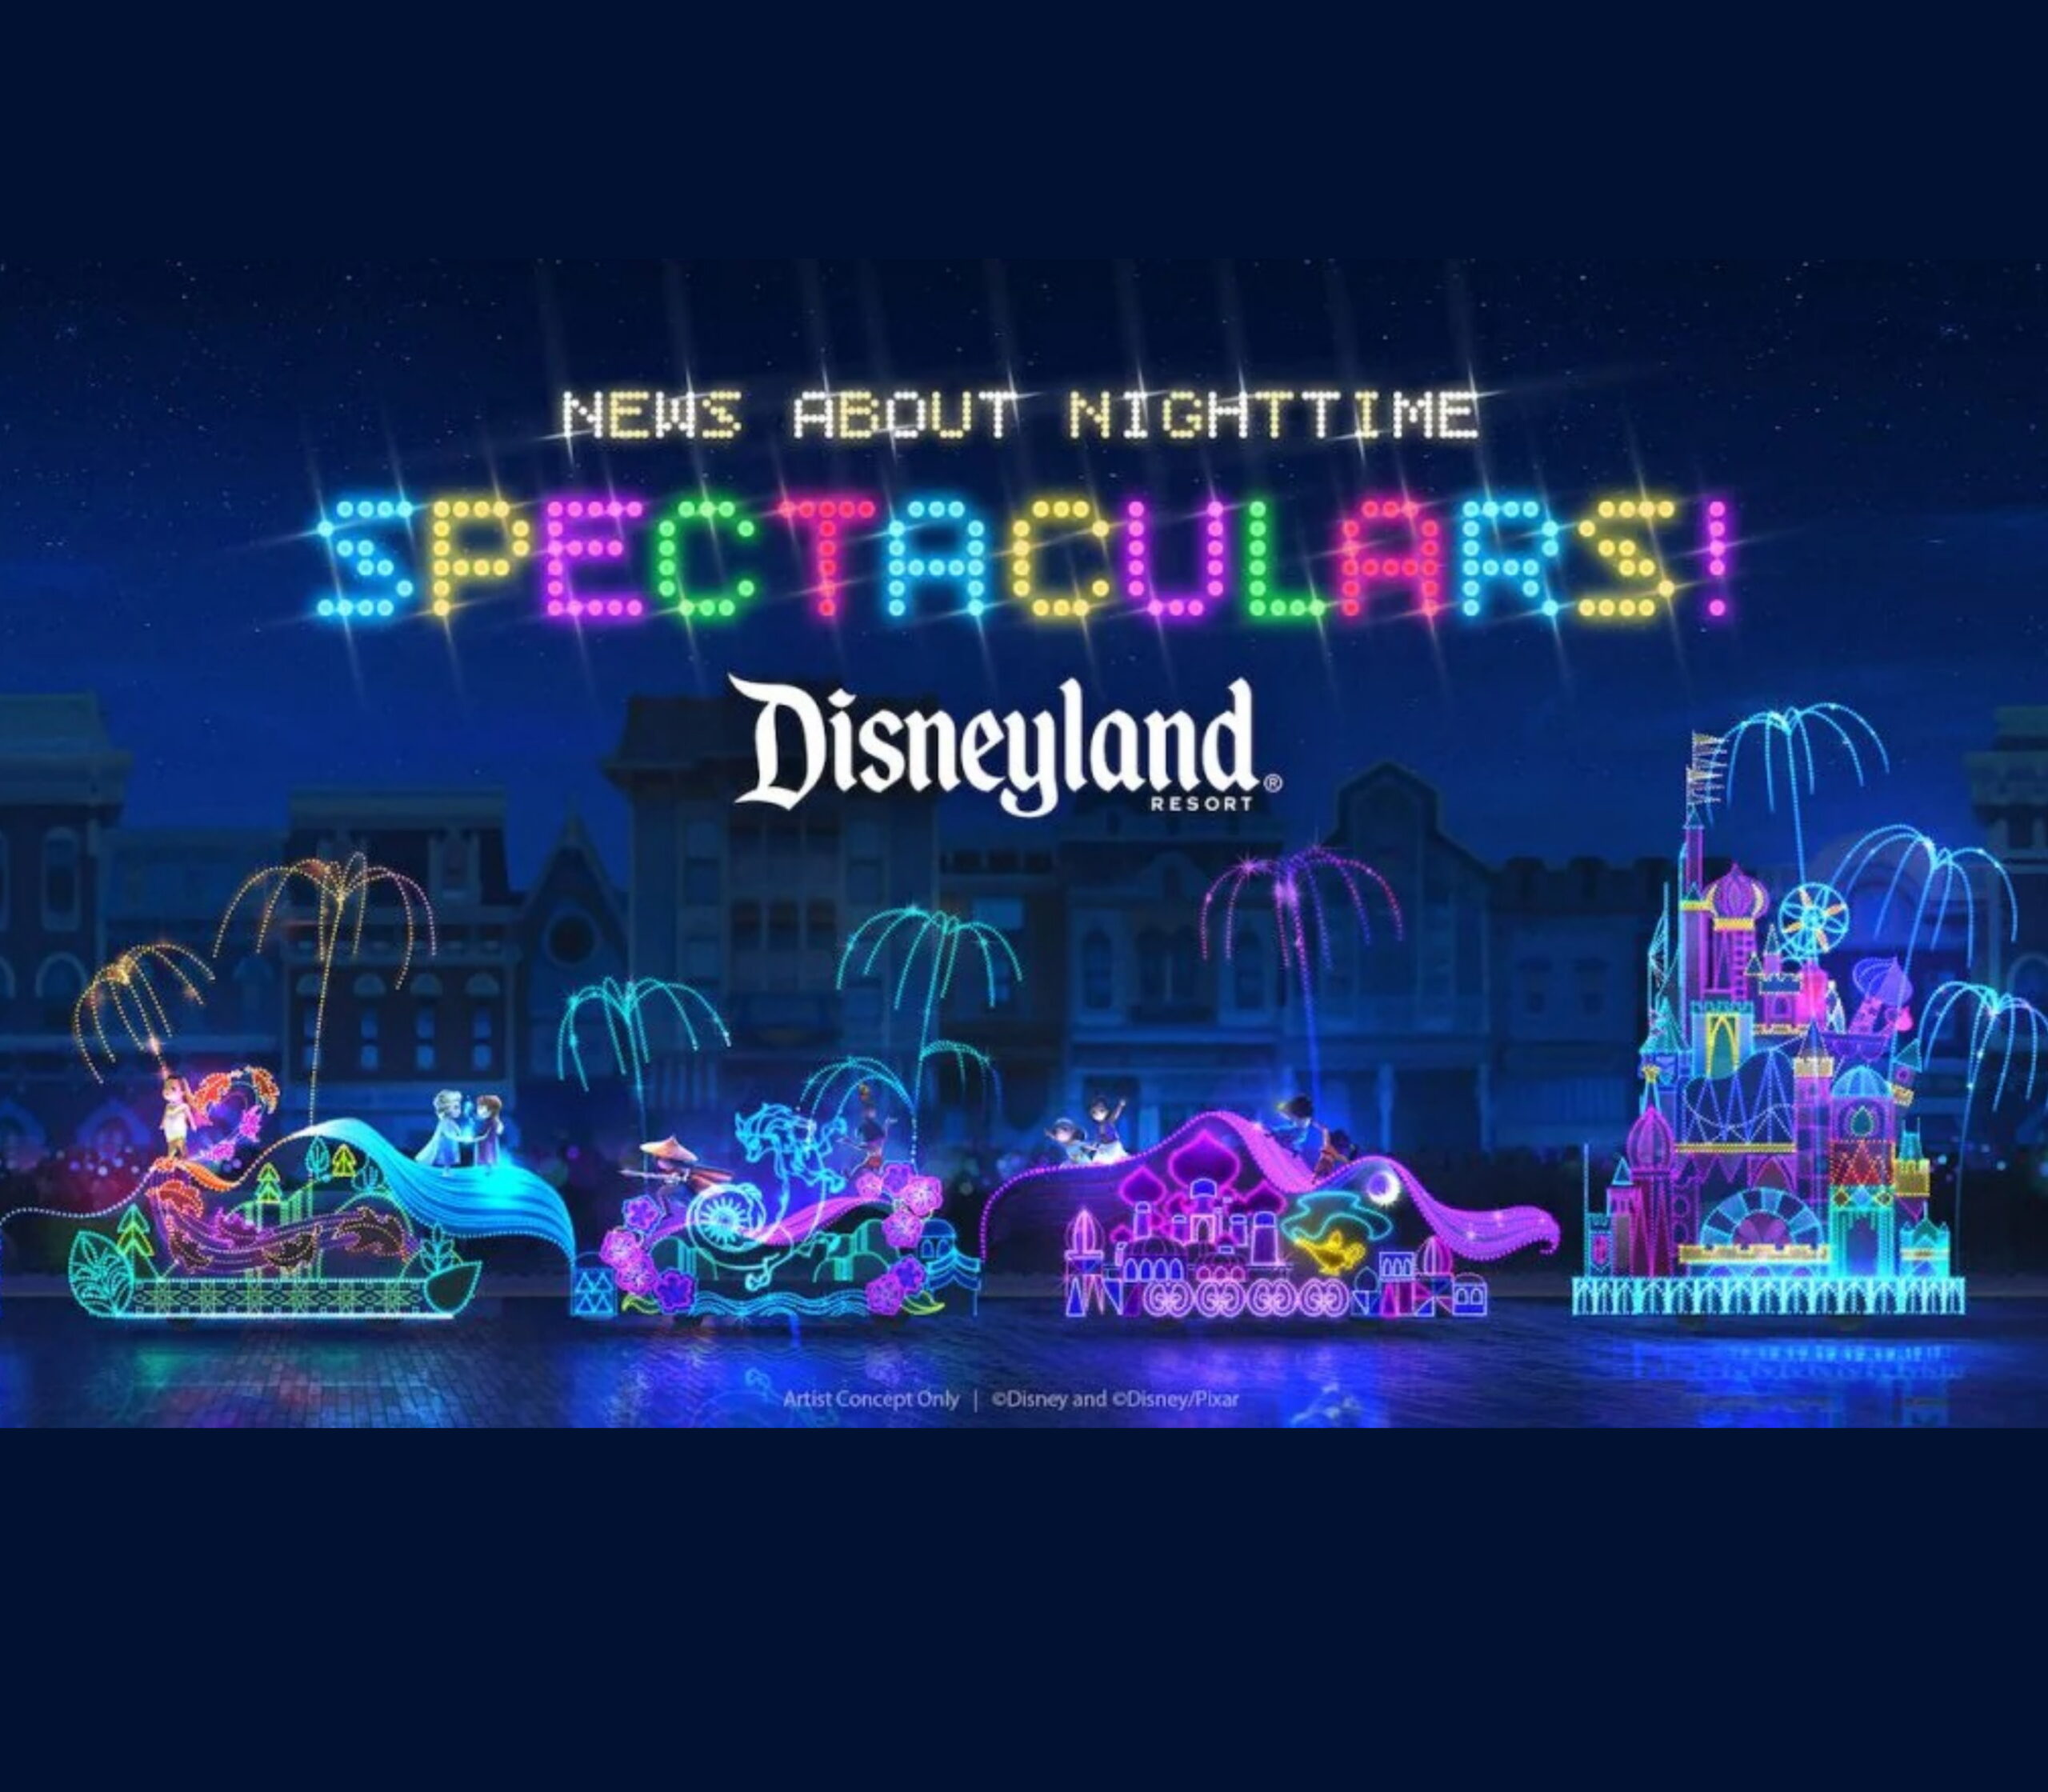 最精彩的迪士尼夜間奇觀Main Street上的彩燈花車遊行配搭主題商品和餐飲套餐